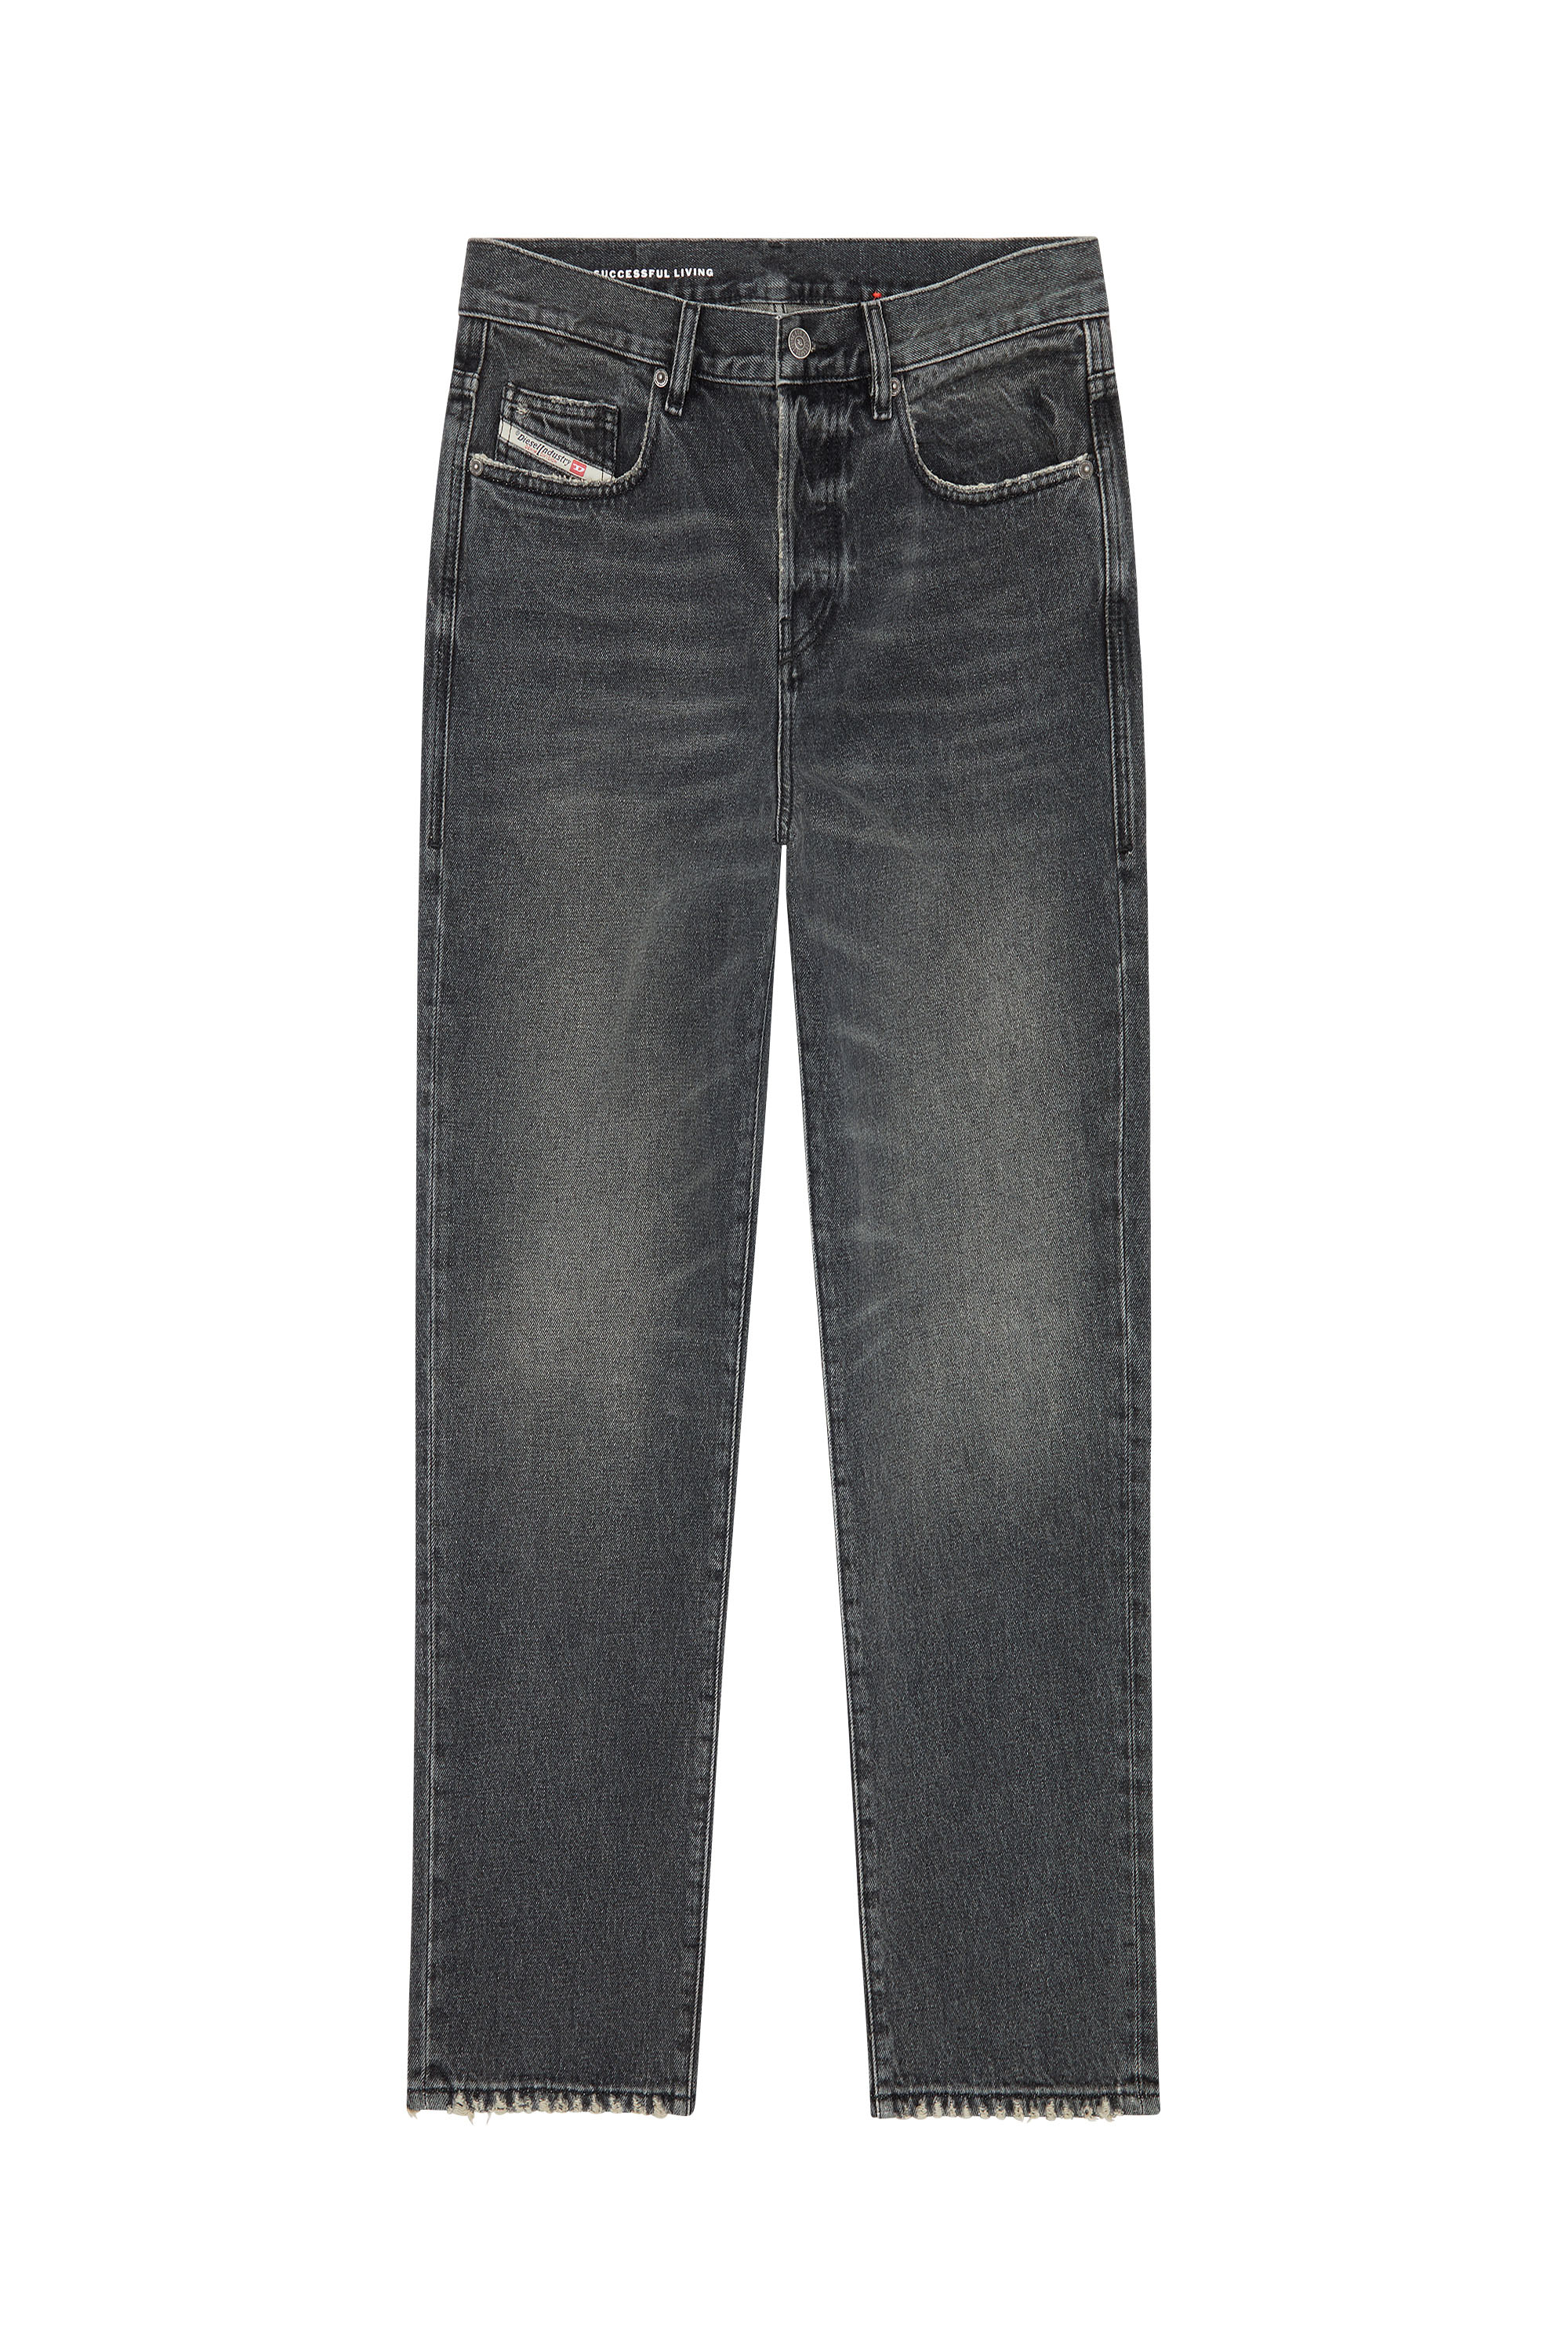 Diesel - Straight Jeans 2020 D-Viker 007K8,  - Image 5